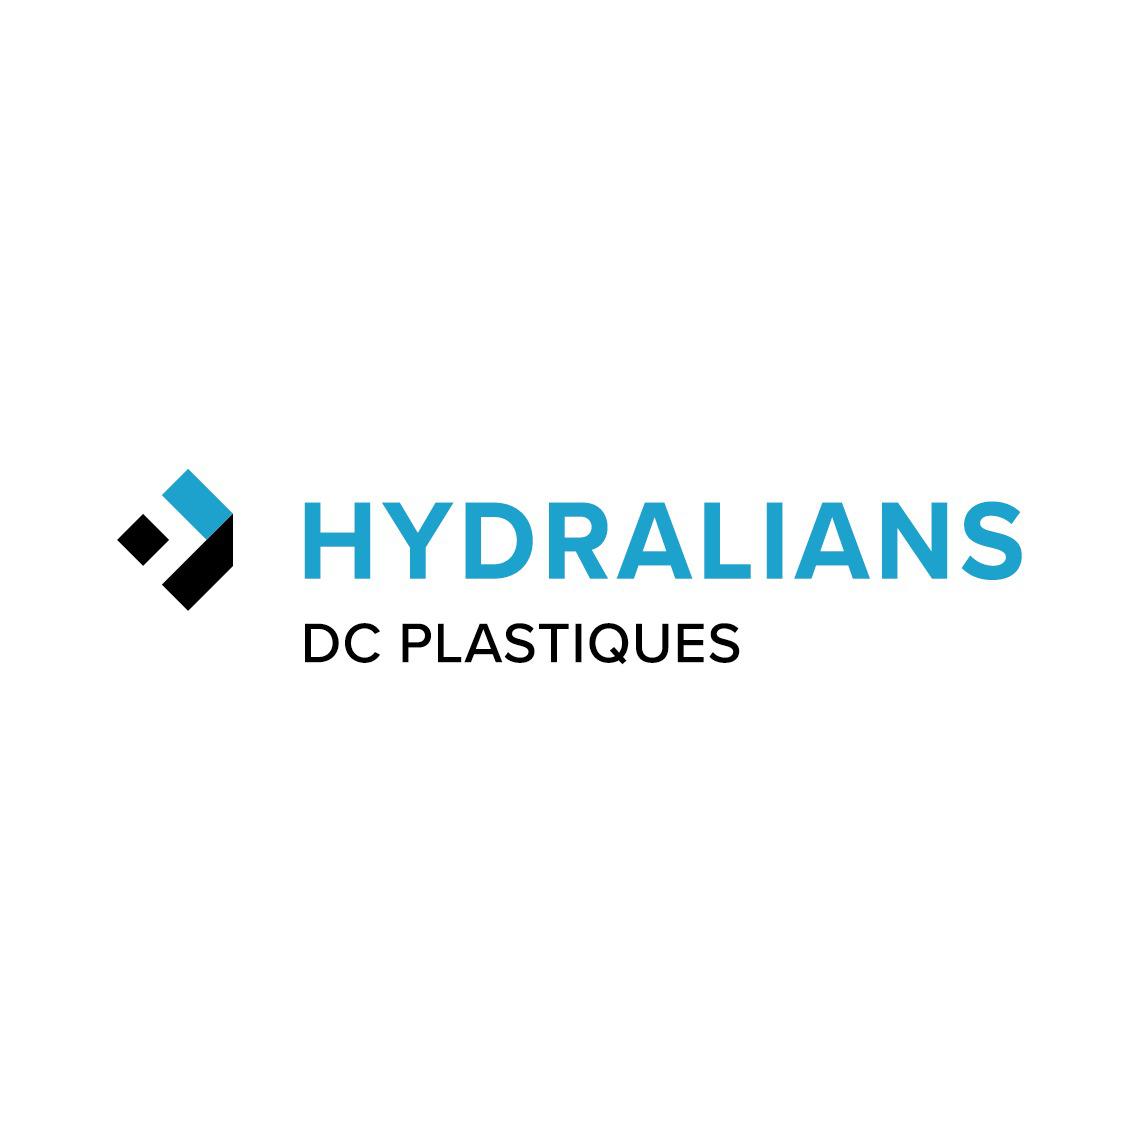 HYDRALIANS DC PLASTIQUES Charleville-Mézières Logo